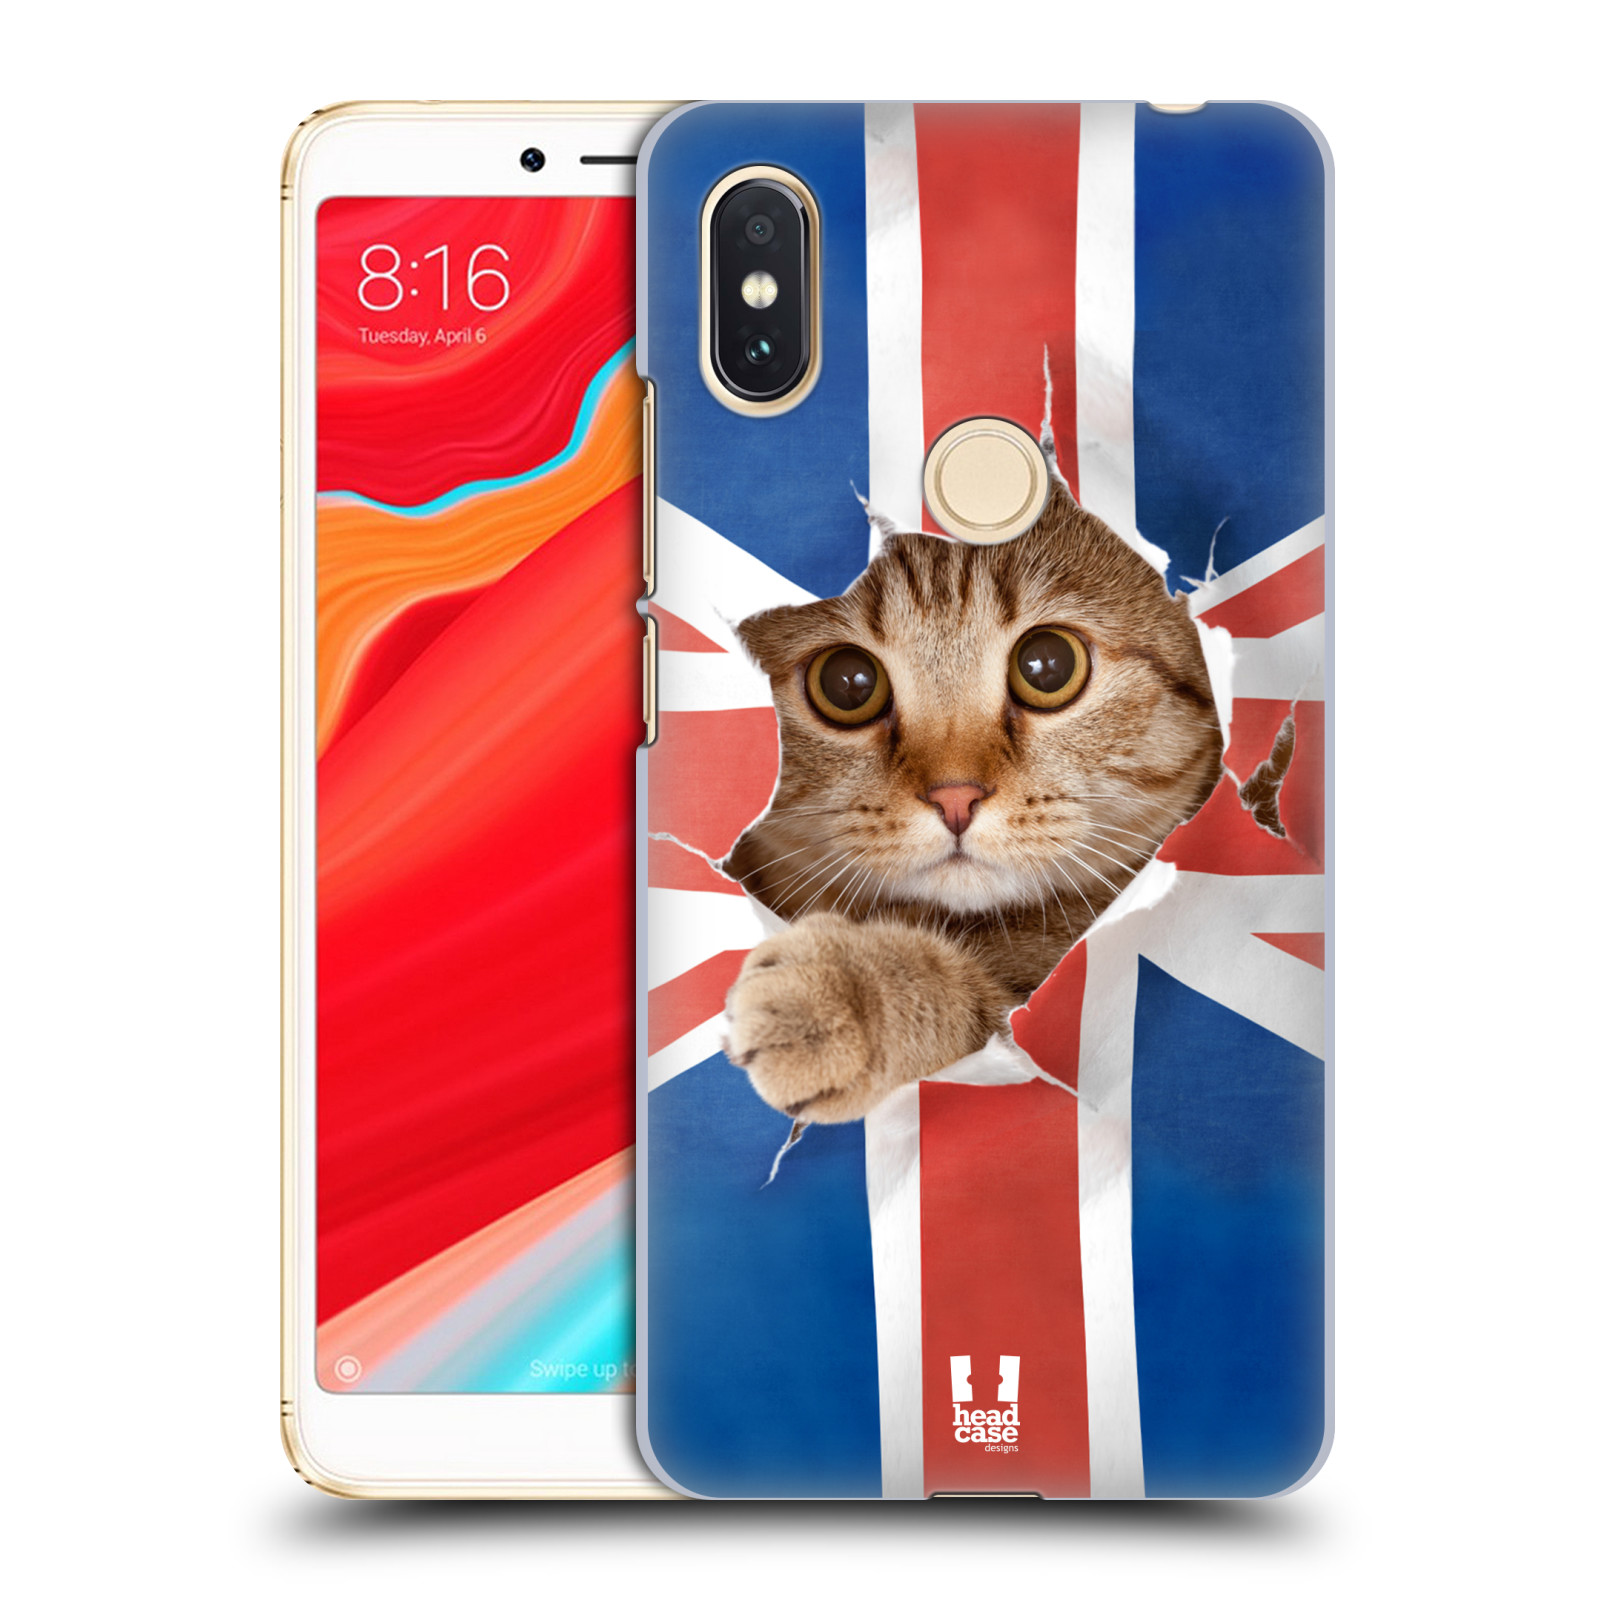 HEAD CASE plastový obal na mobil Xiaomi Redmi S2 vzor Legrační zvířátka kočička a Velká Británie vlajka